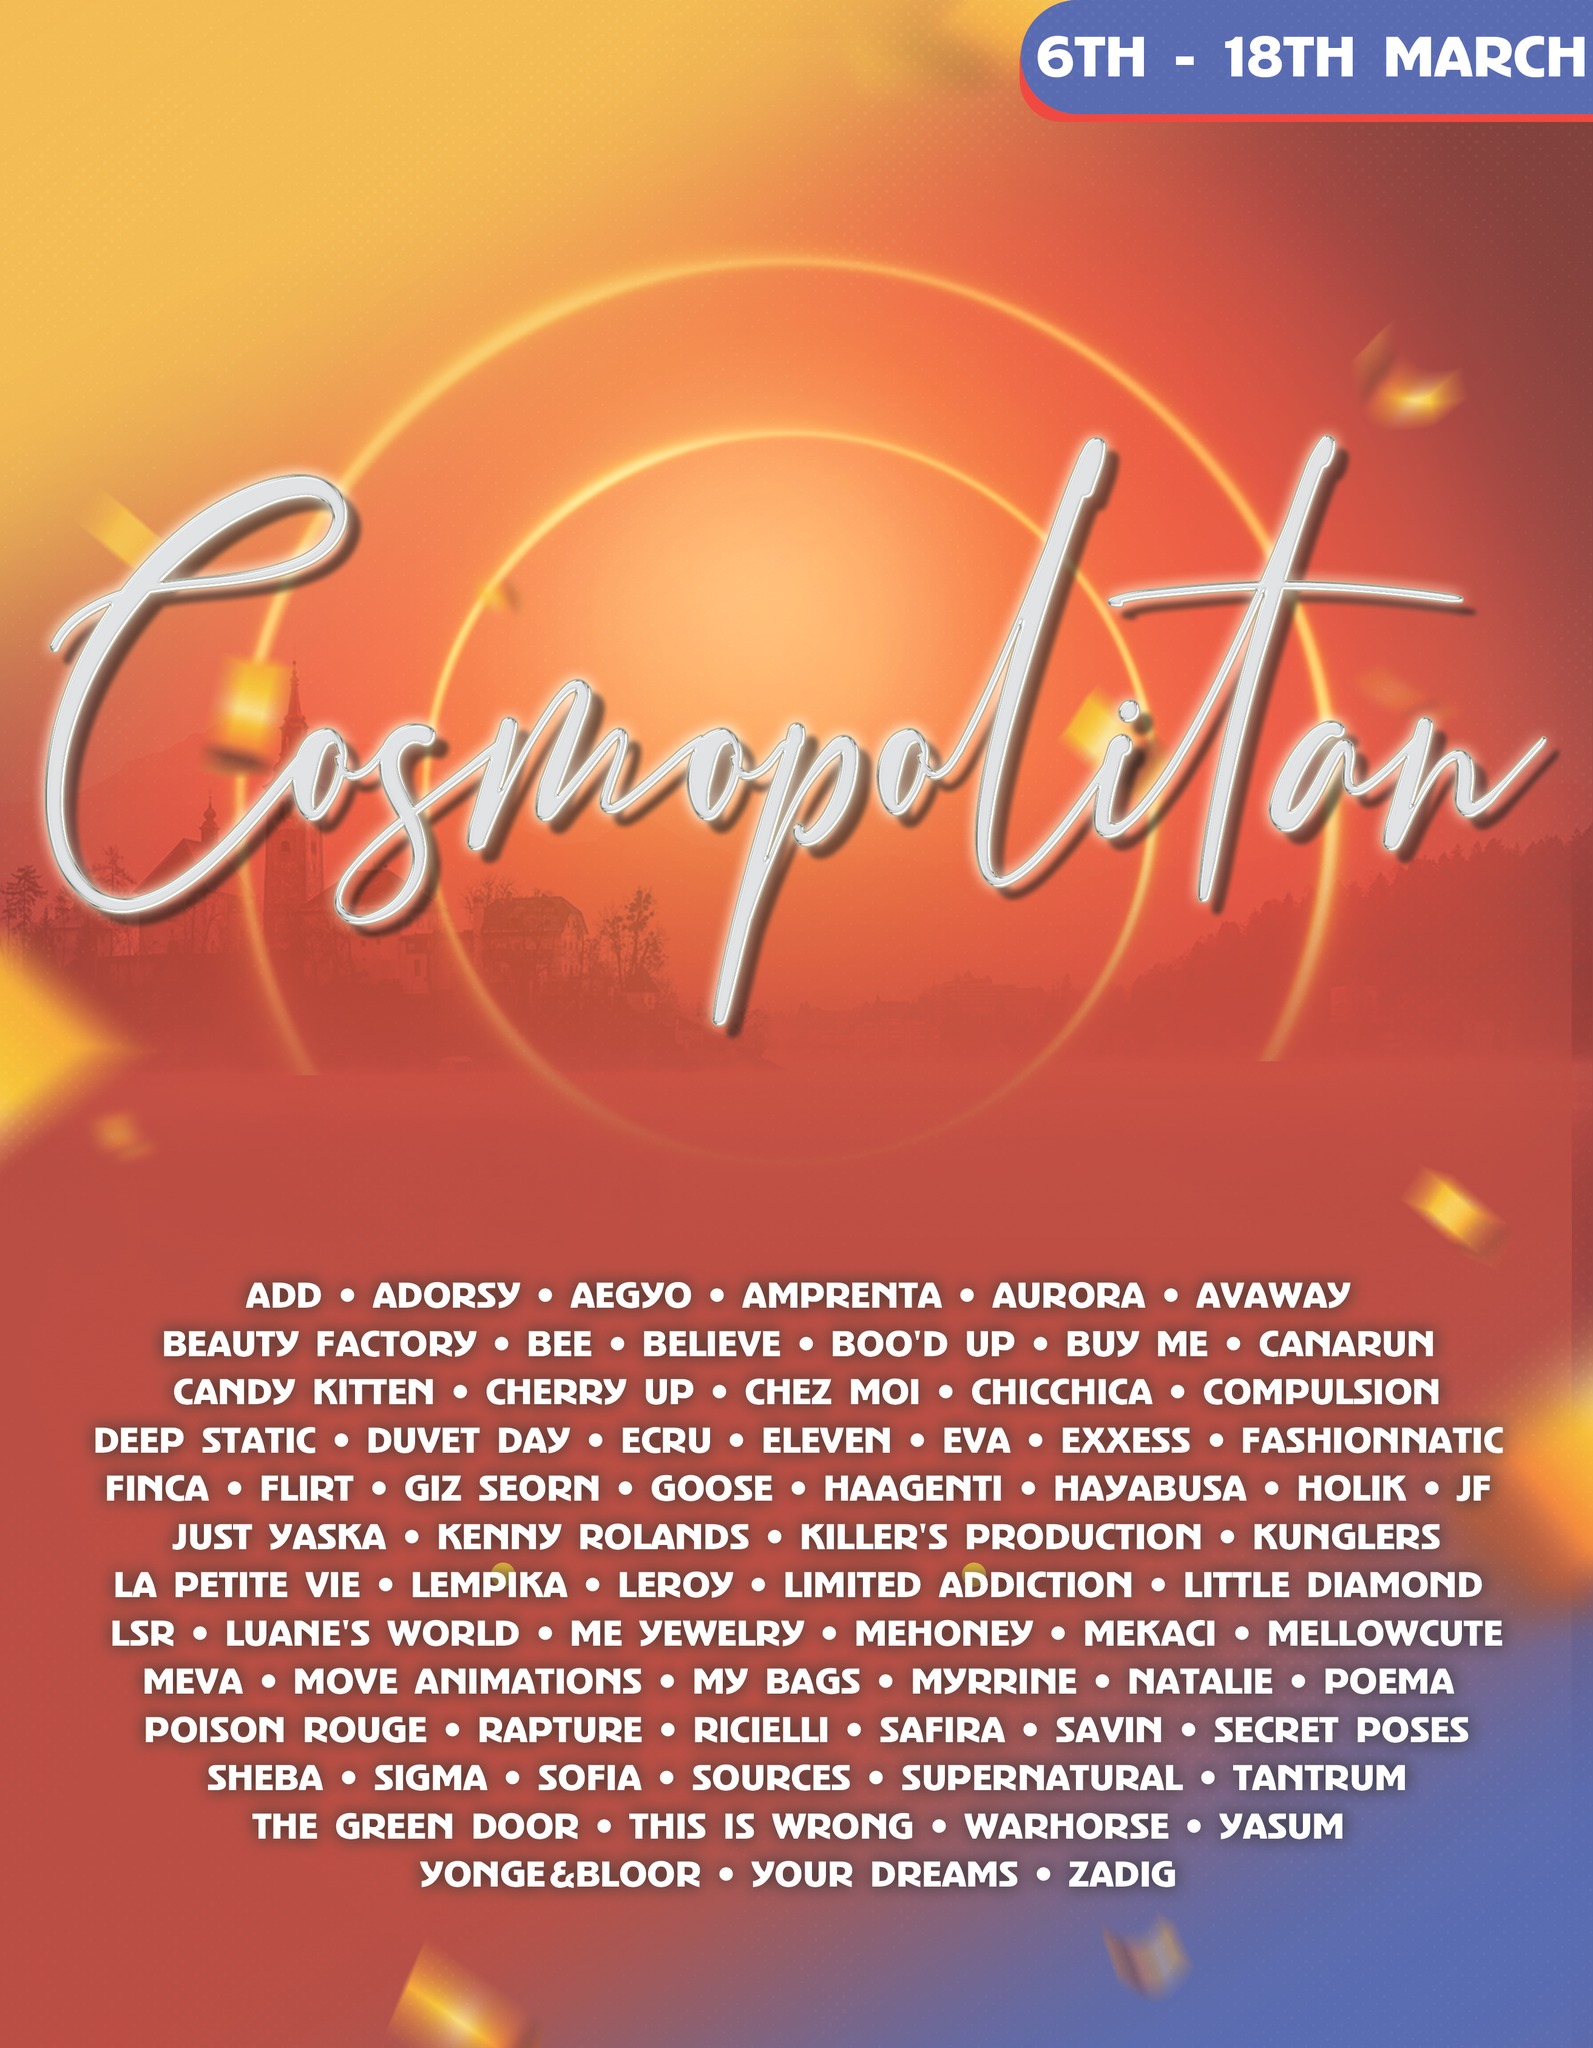 Press Release – Cosmopolitan Event